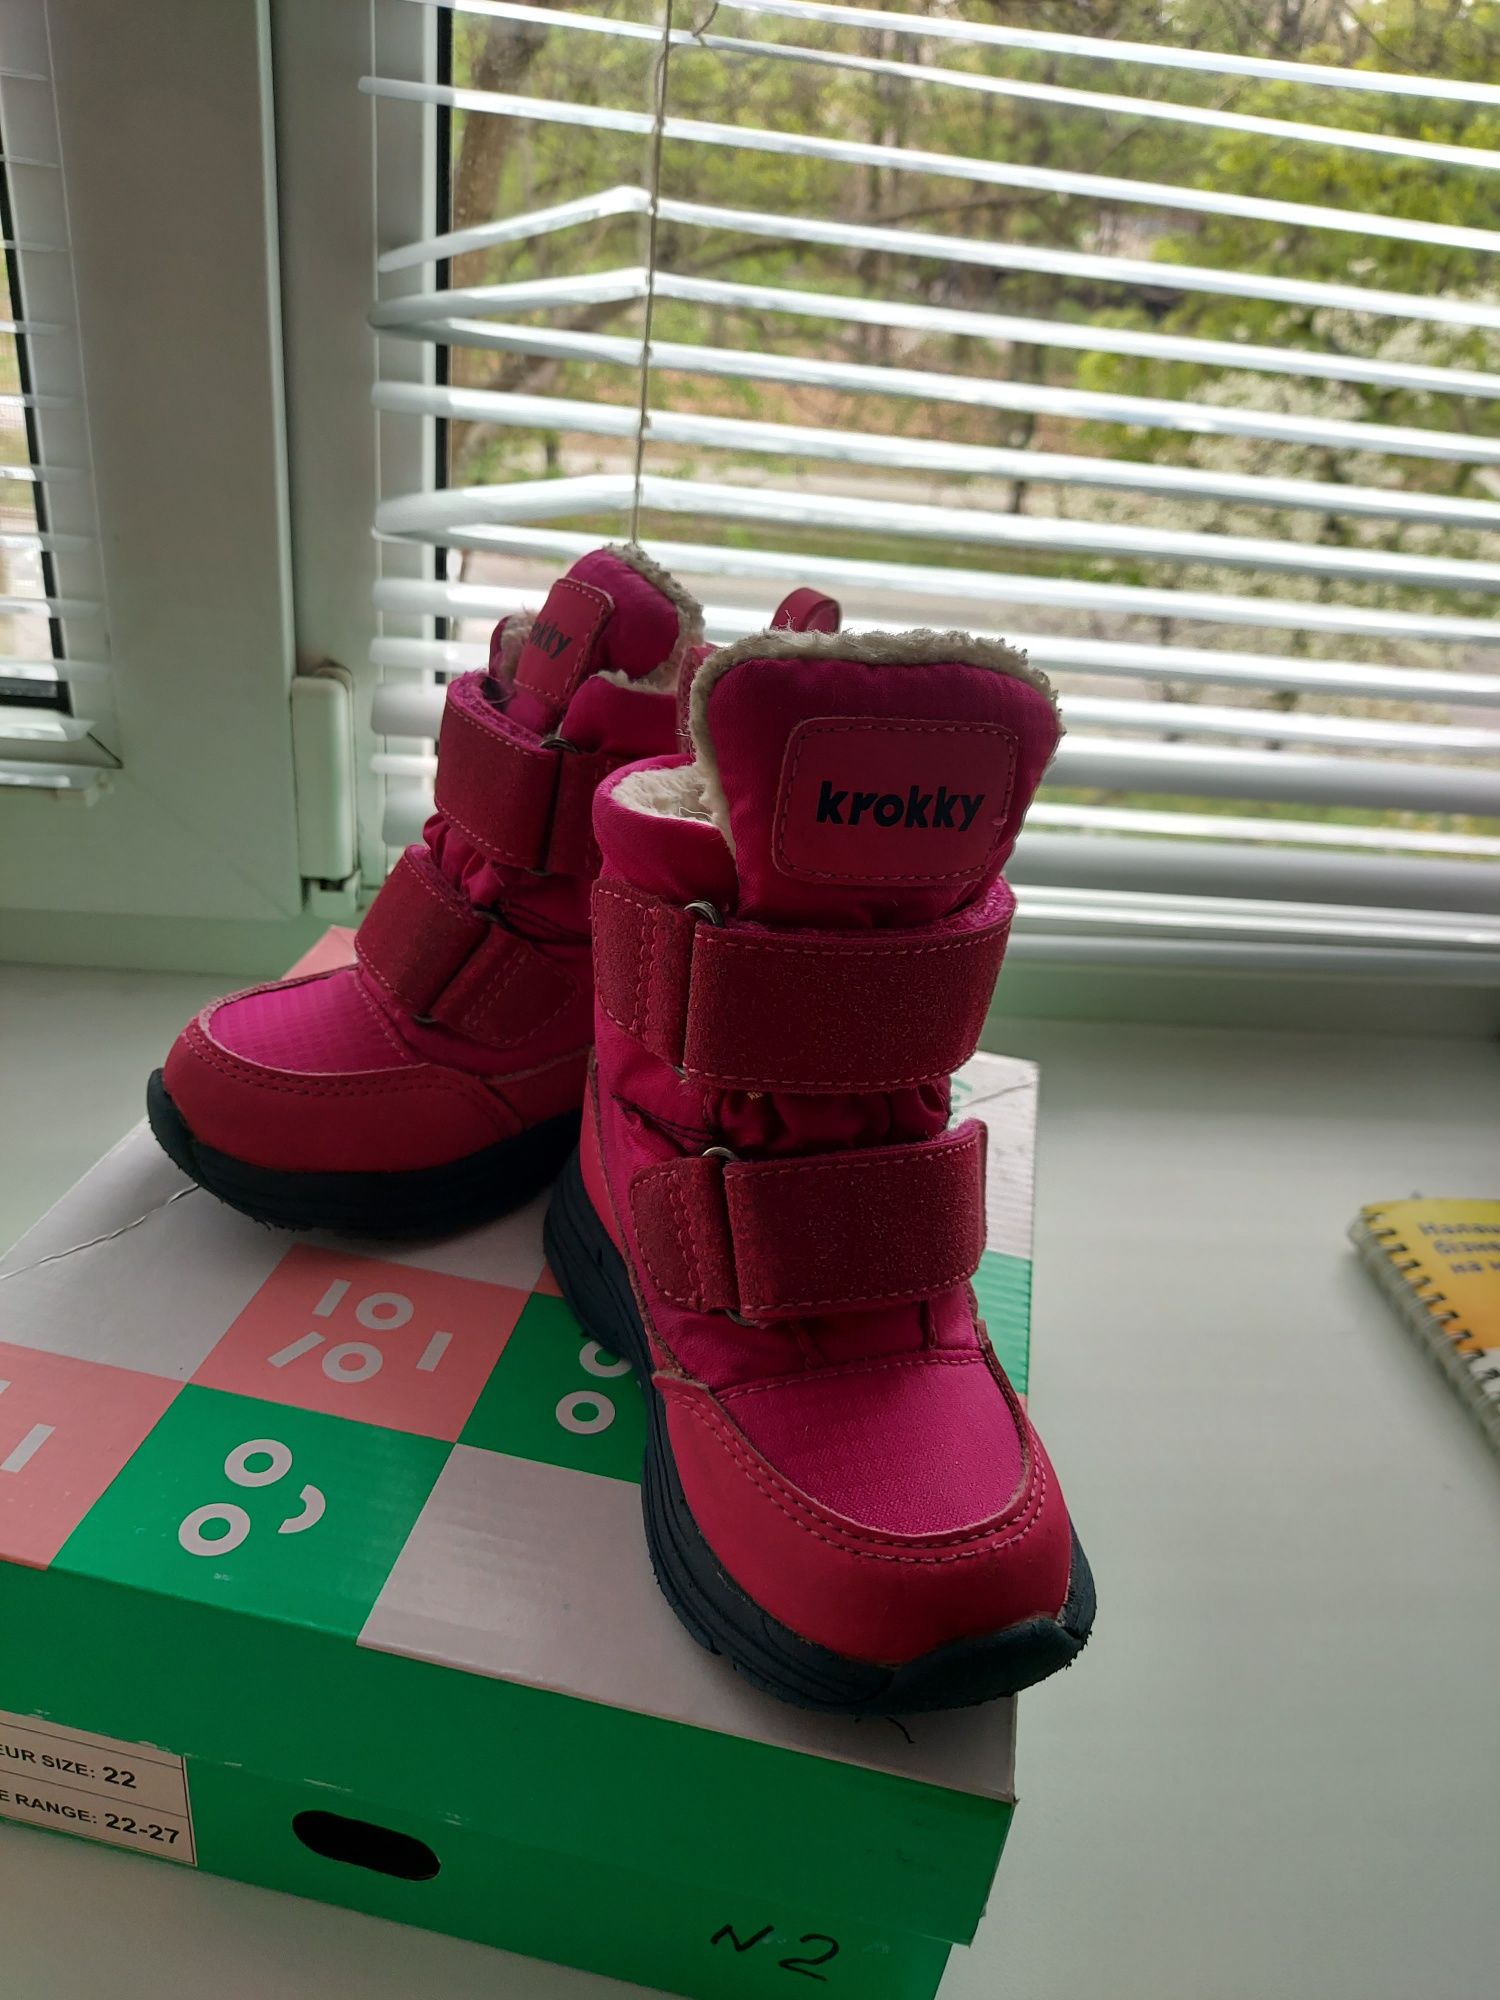 Зимние термо-ботинки ТМ KROKKY

   Розовый